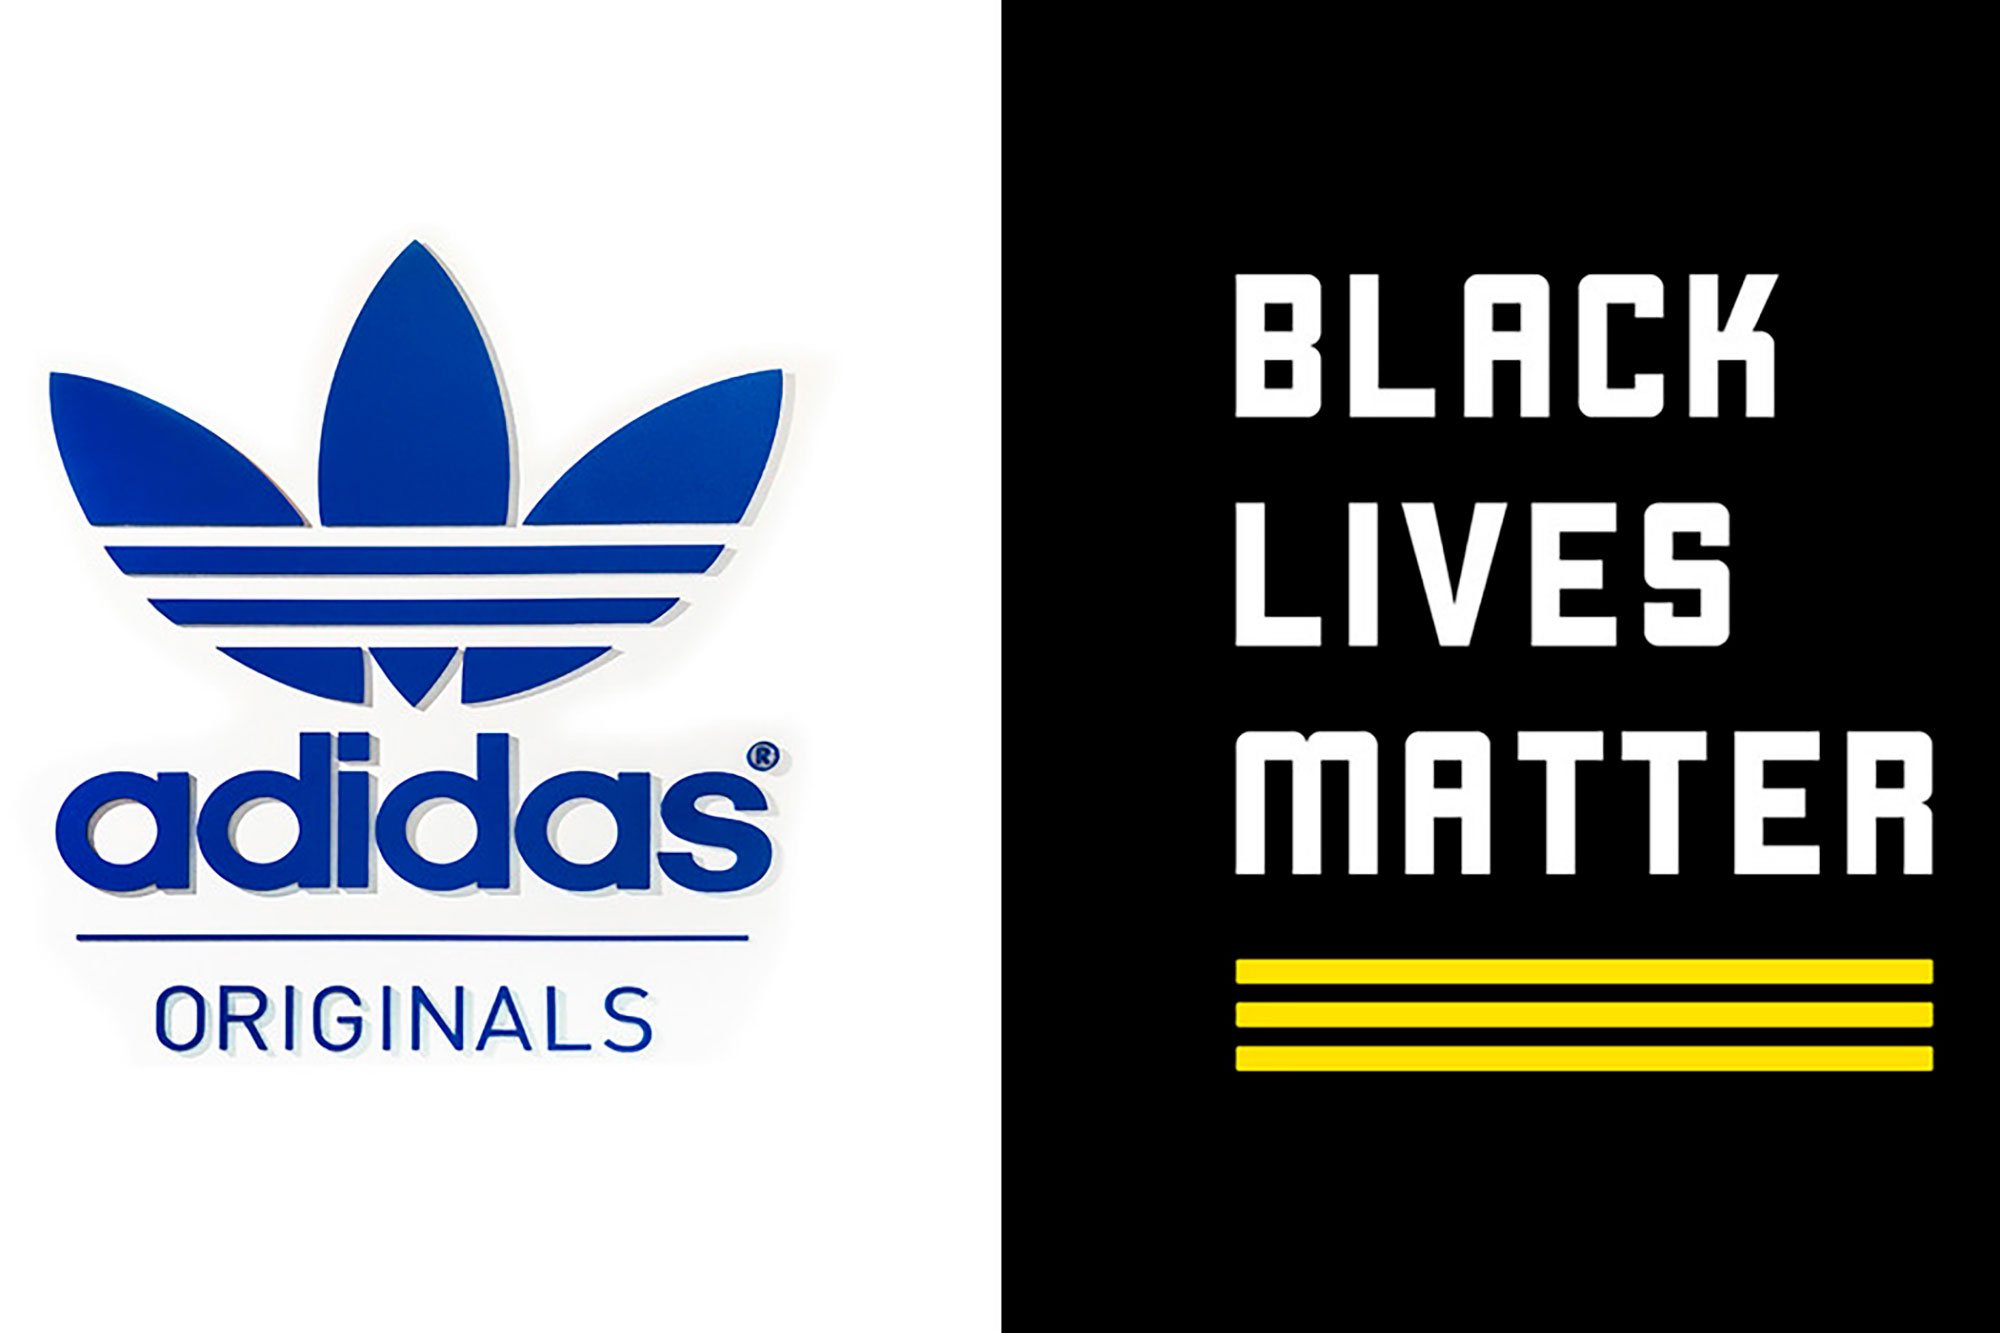 Adidas cree que de Black Lives se confunde con su logo y luego se retracta - Emprendedor